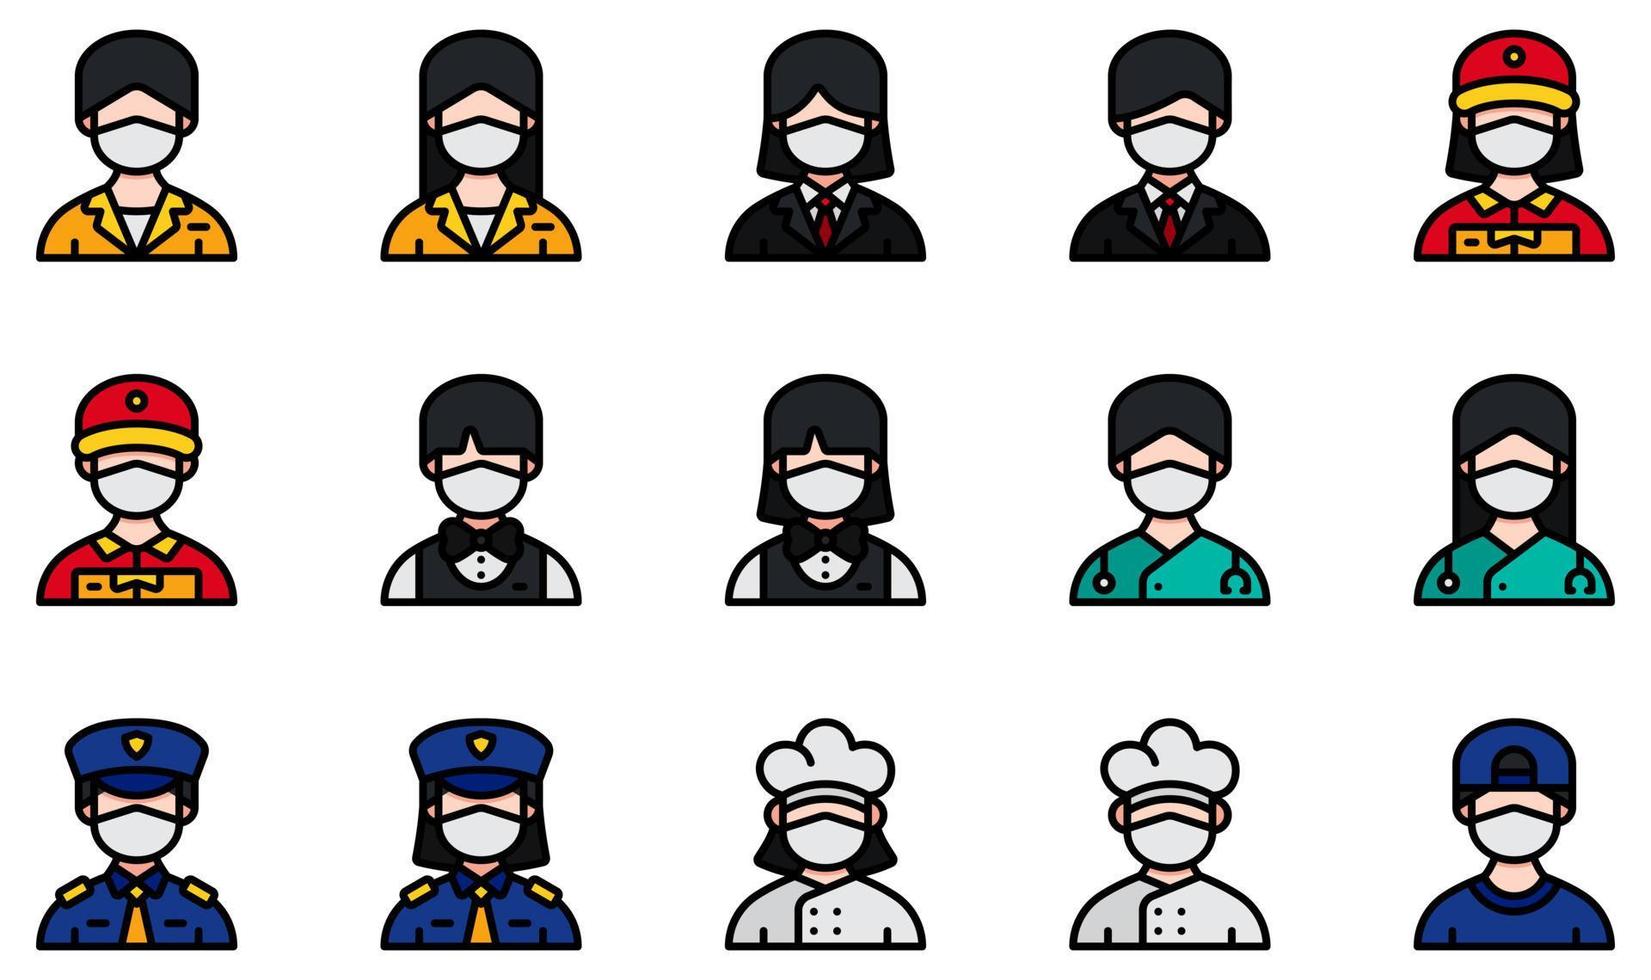 Satz von Vektorsymbolen im Zusammenhang mit Avataren mit medizinischen Masken. enthält Symbole wie Rezeption, Geschäftsmann, Lieferbote, Barkeeper, Arzt, Polizei und mehr. vektor